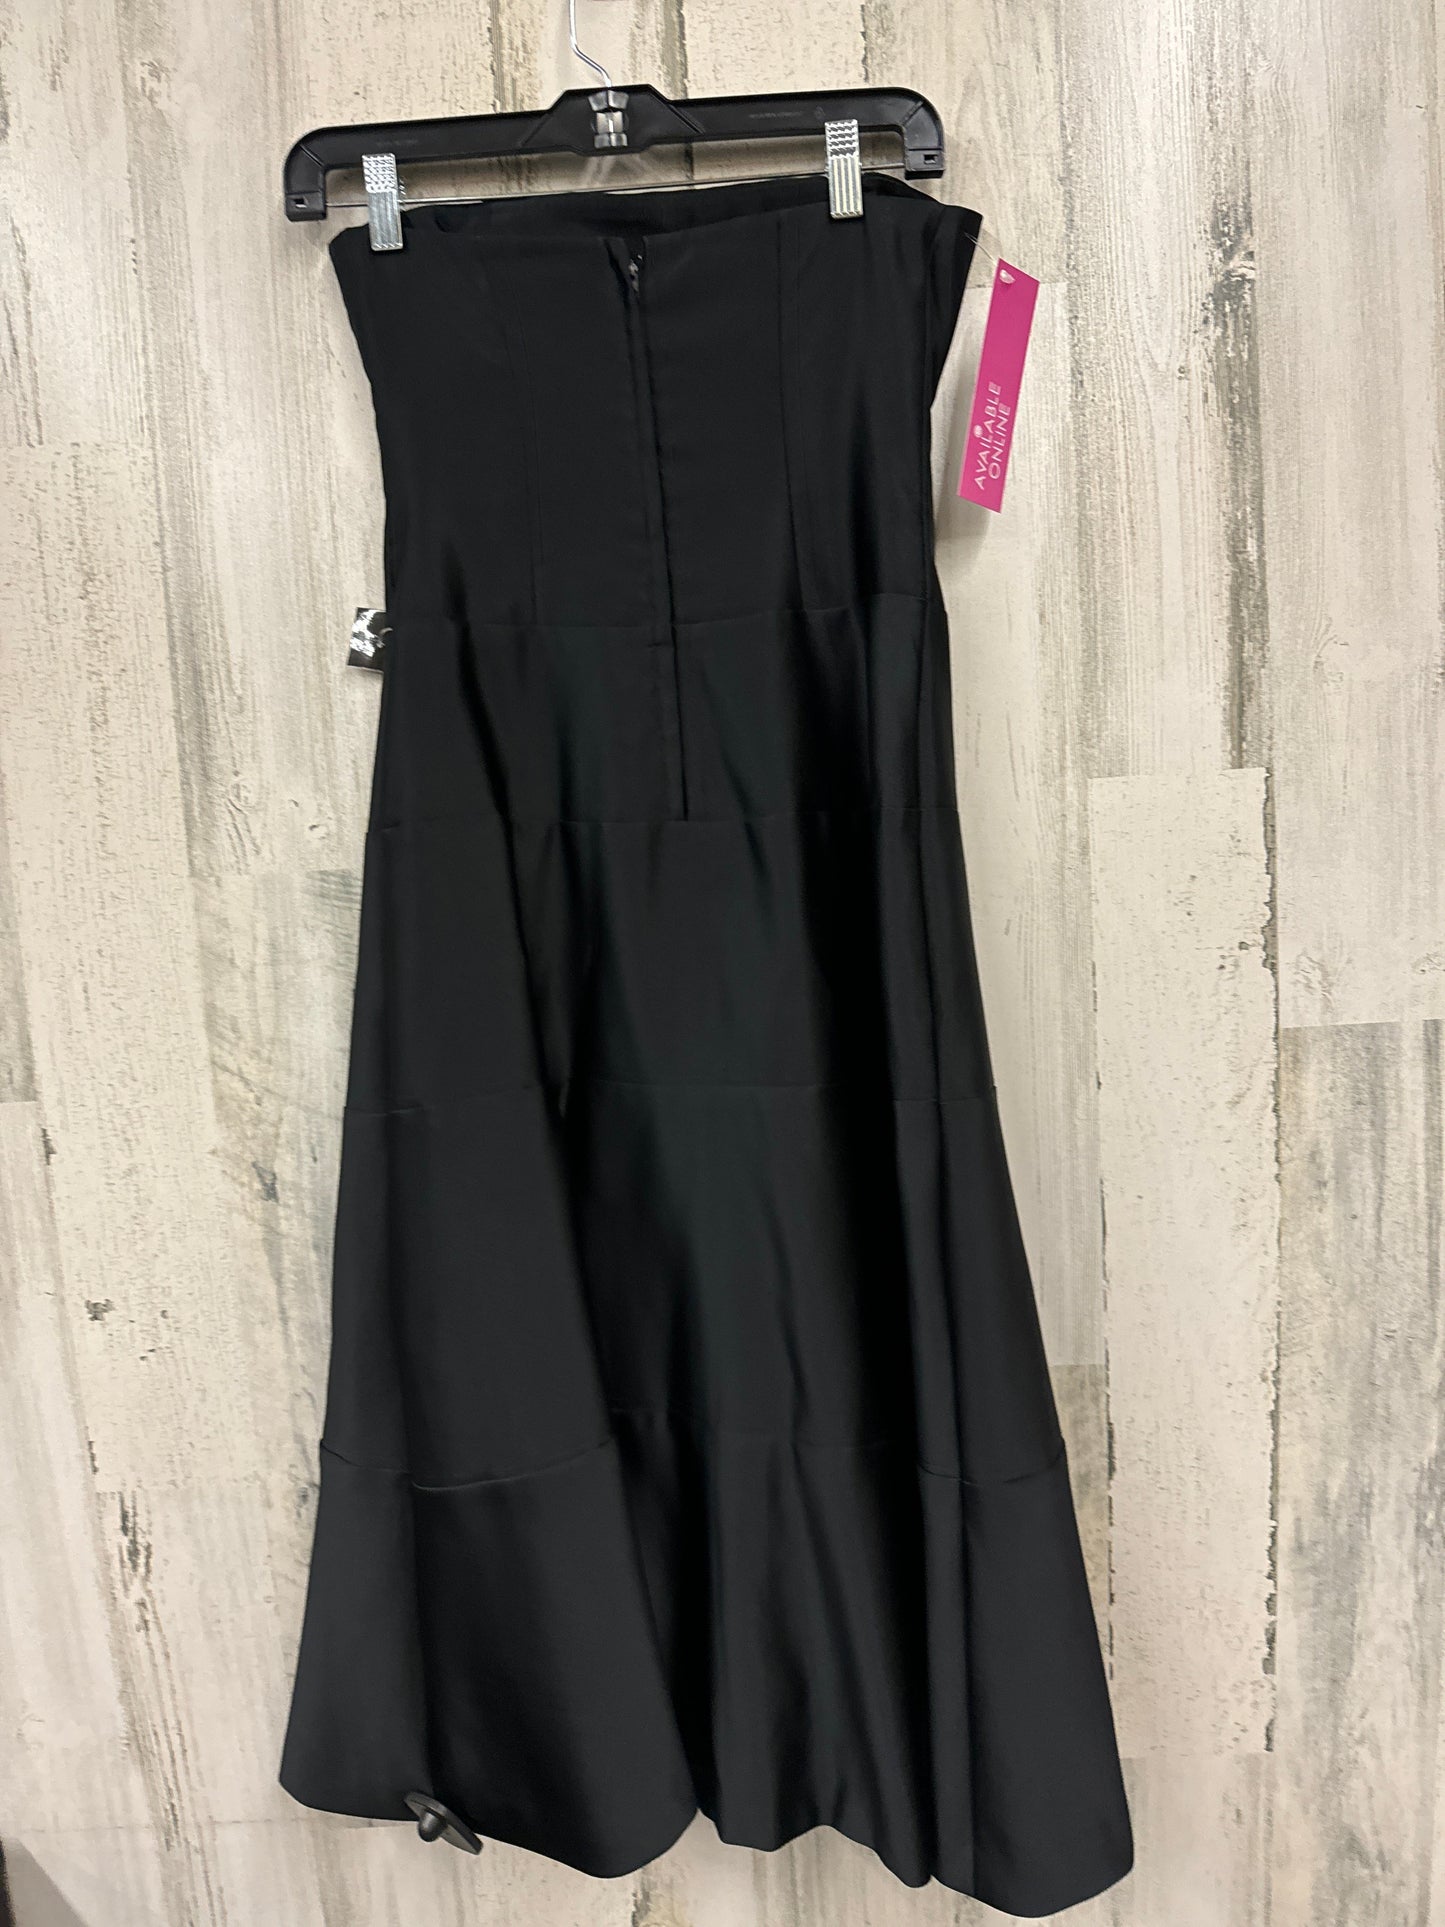 Black Dress Party Midi Bcbgmaxazria, Size Xs